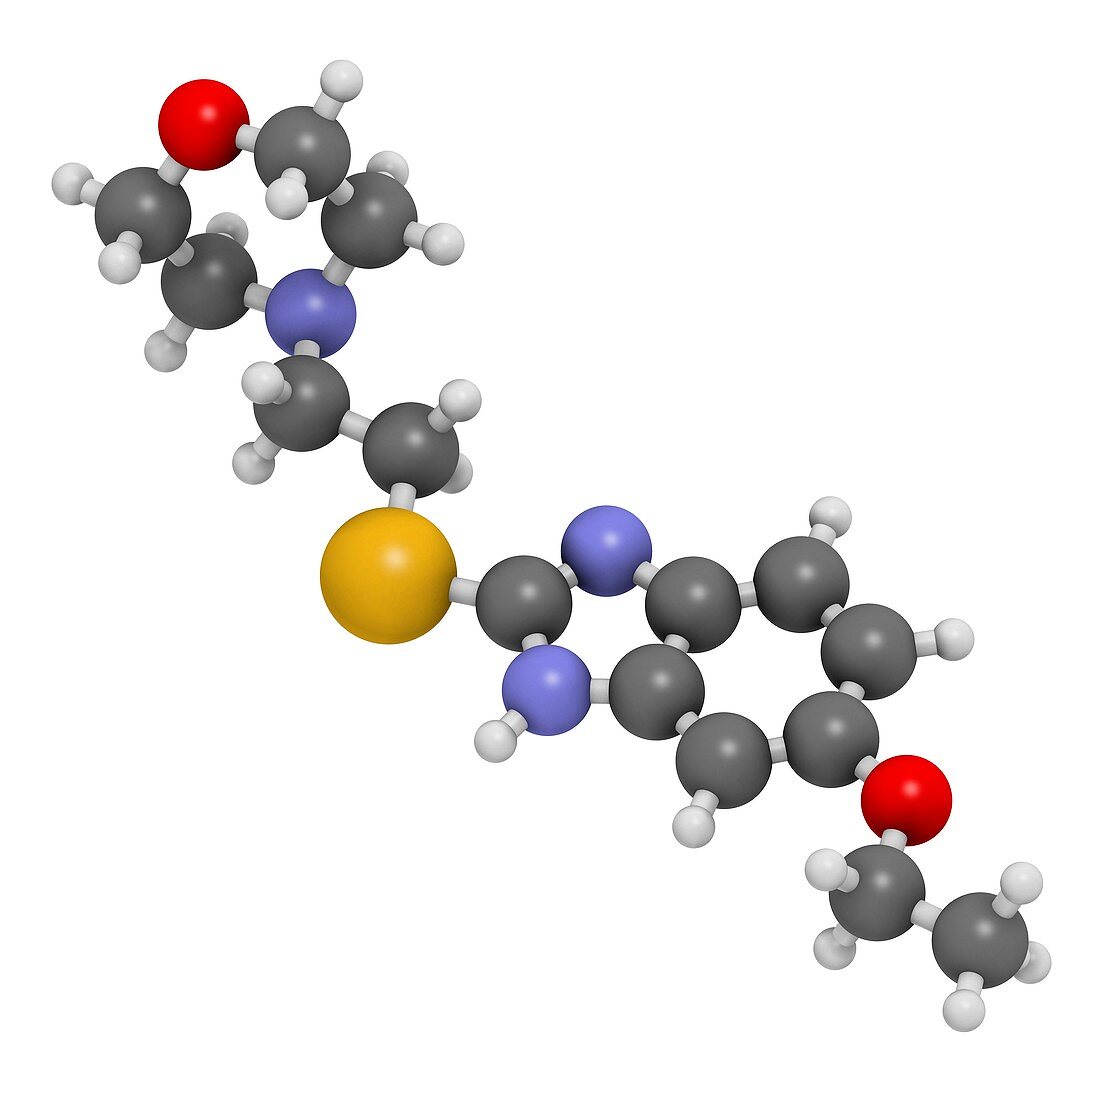 Fabomotizole antianxiety drug molecule